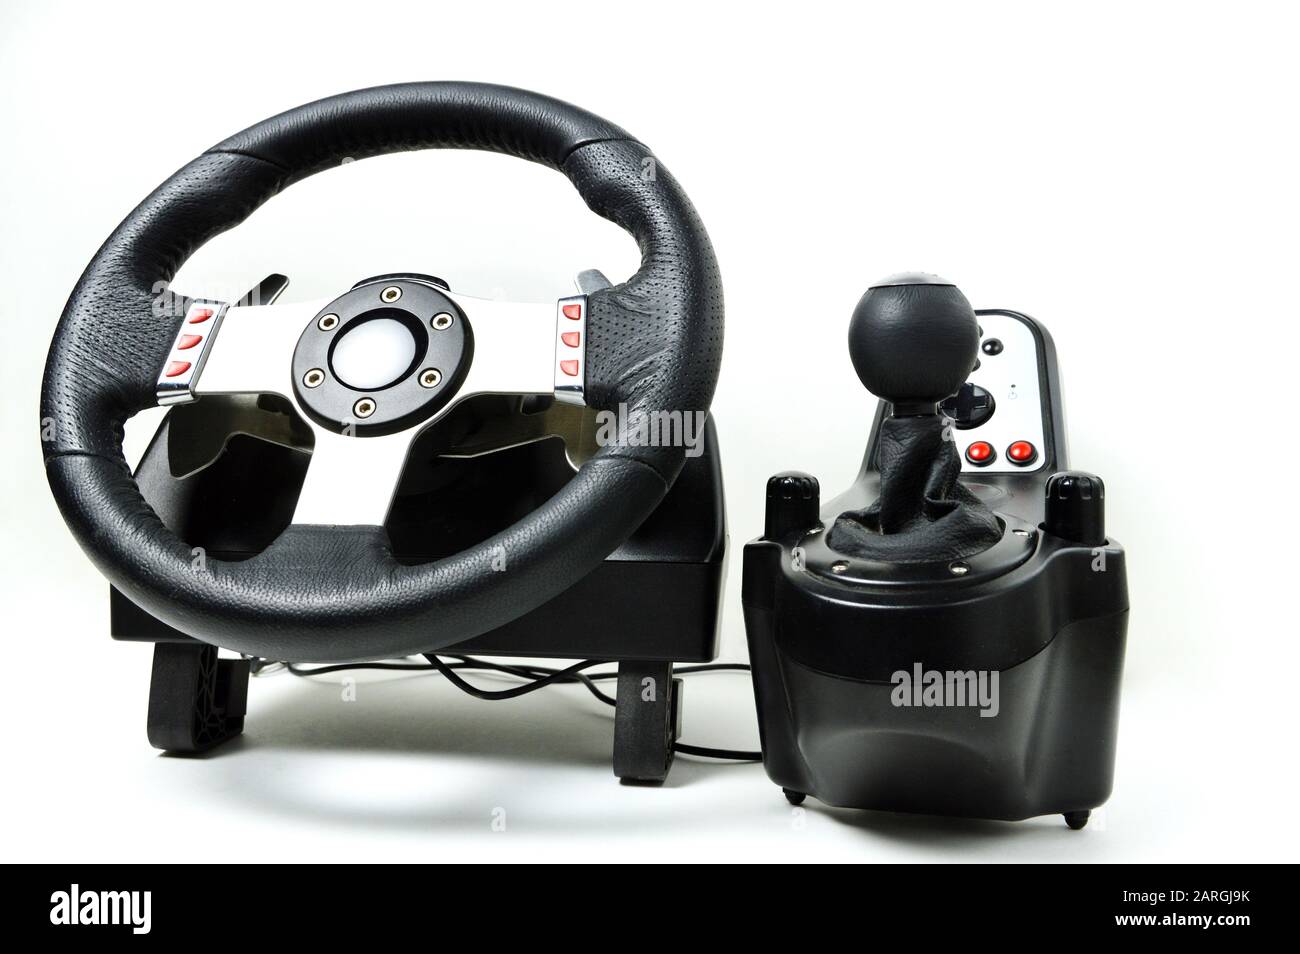 Una rueda de carreras para los videojuegos de carreras y simuladores de carreras Foto de stock